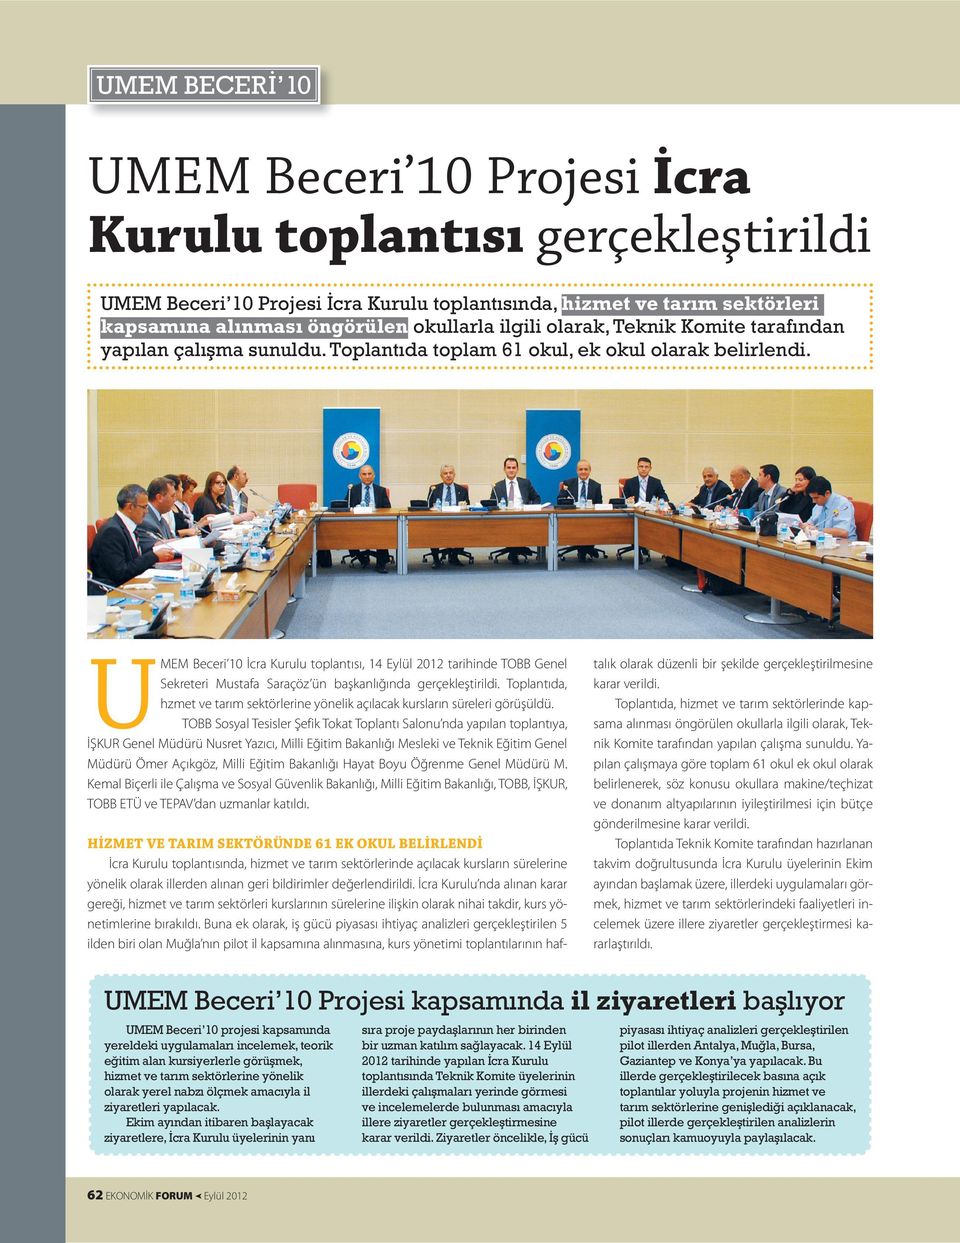 U MEM Beceri 10 İcra Kurulu toplantısı, 14 Eylül 2012 tarihinde TOBB Genel Sekreteri Mustafa Saraçöz ün başkanlığında gerçekleştirildi.